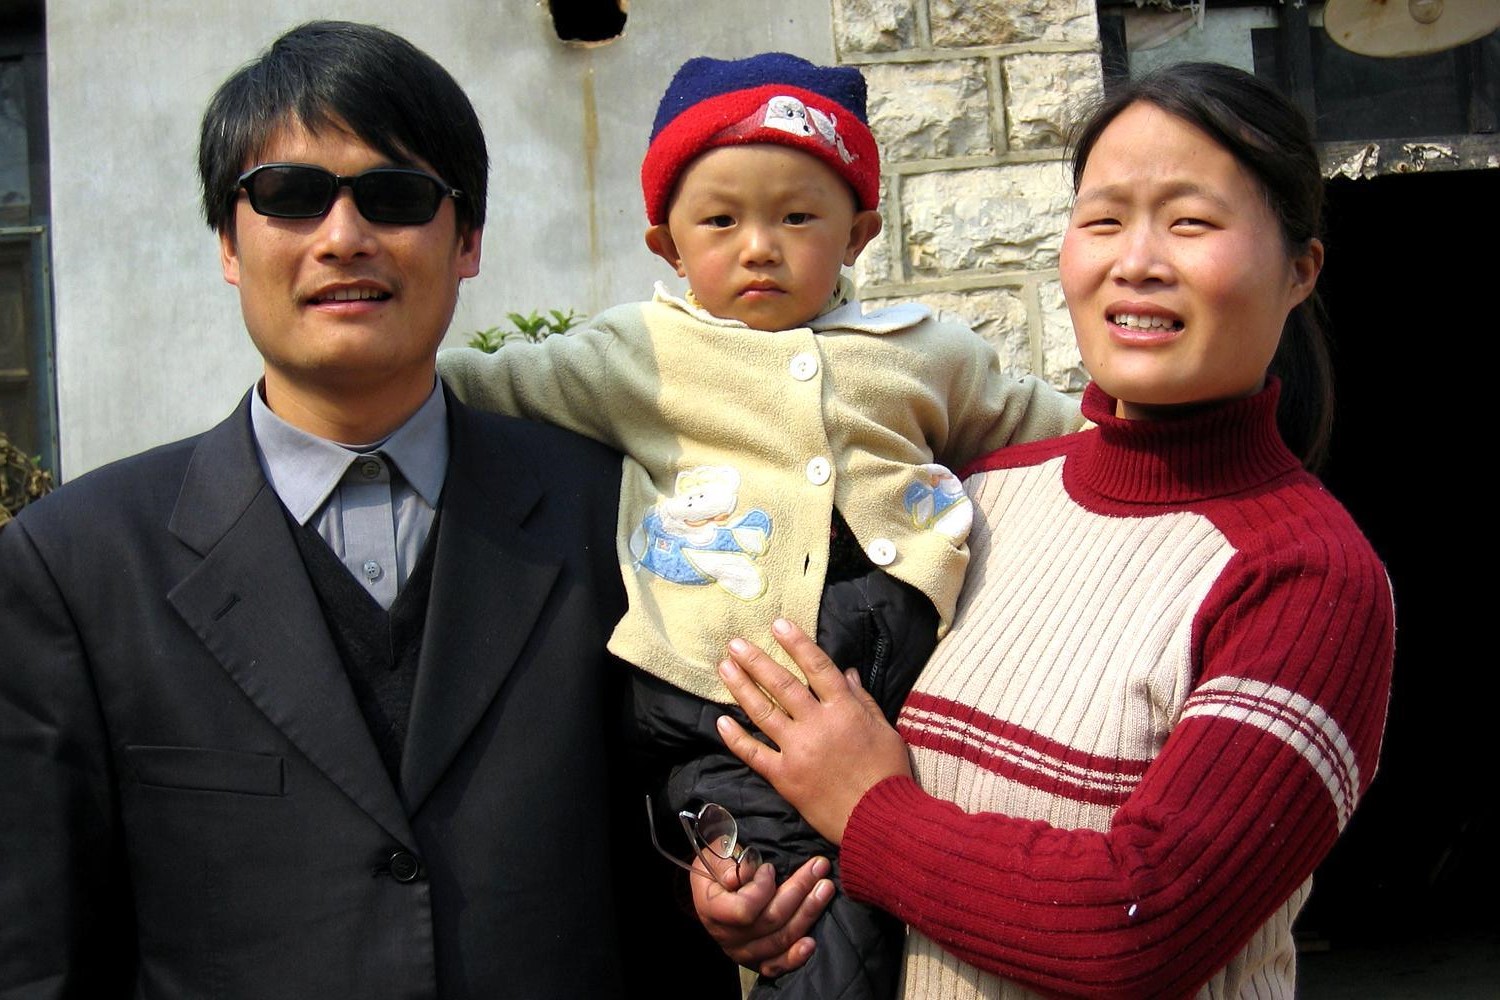 عکس فرار مخالف چینی به سفارت امریکا